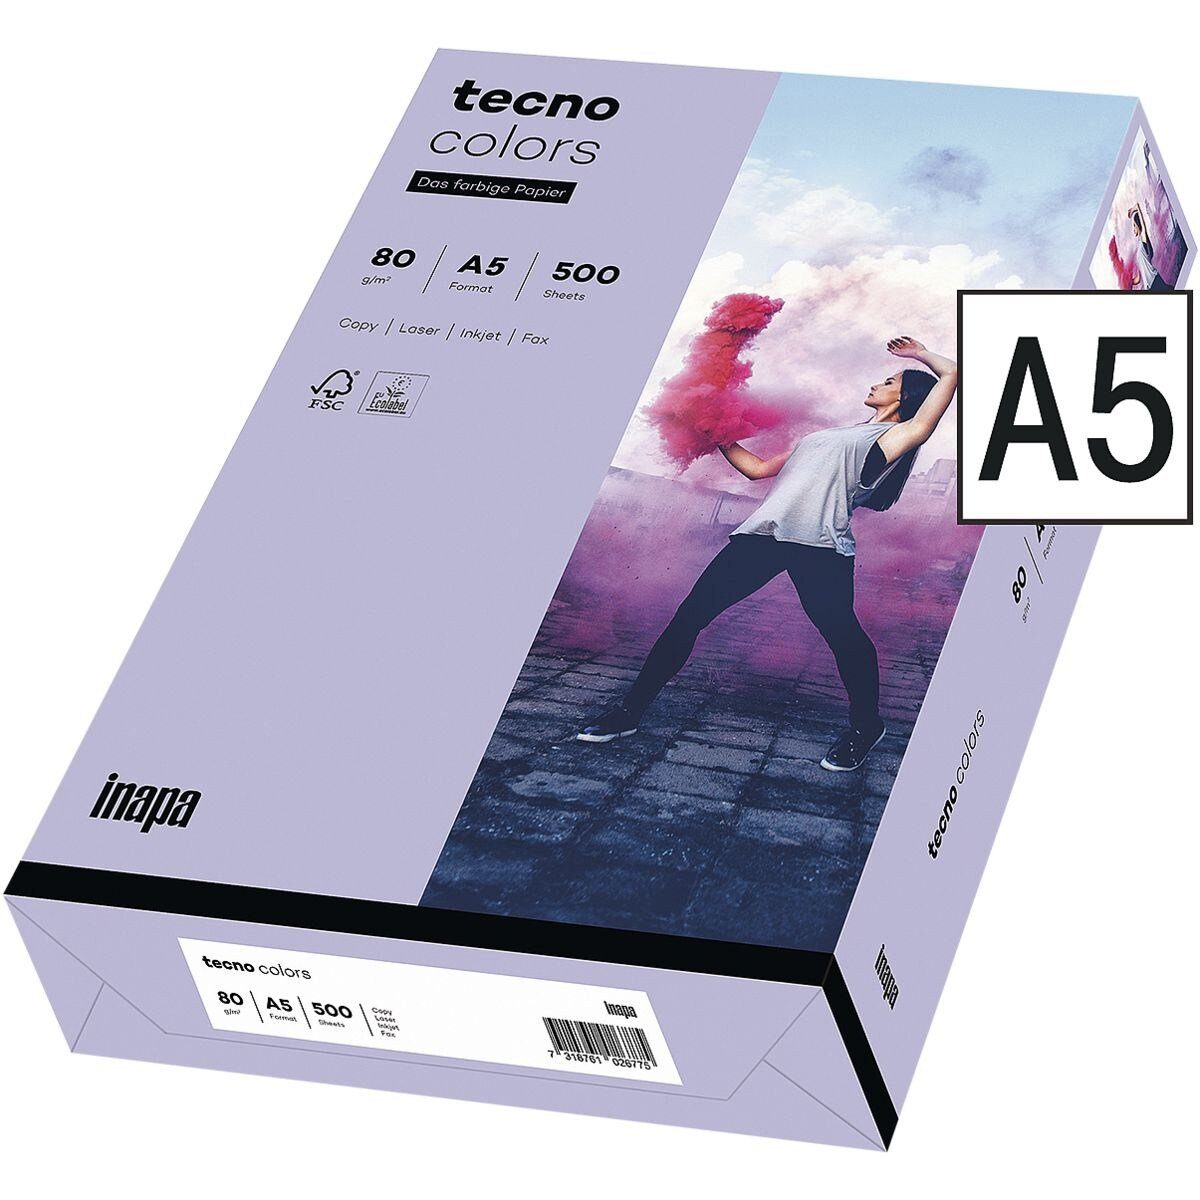 g/m² A5, DIN Format 80 und tecno Drucker- Pastellfarben, Kopierpapier Rainbow, violett Inapa